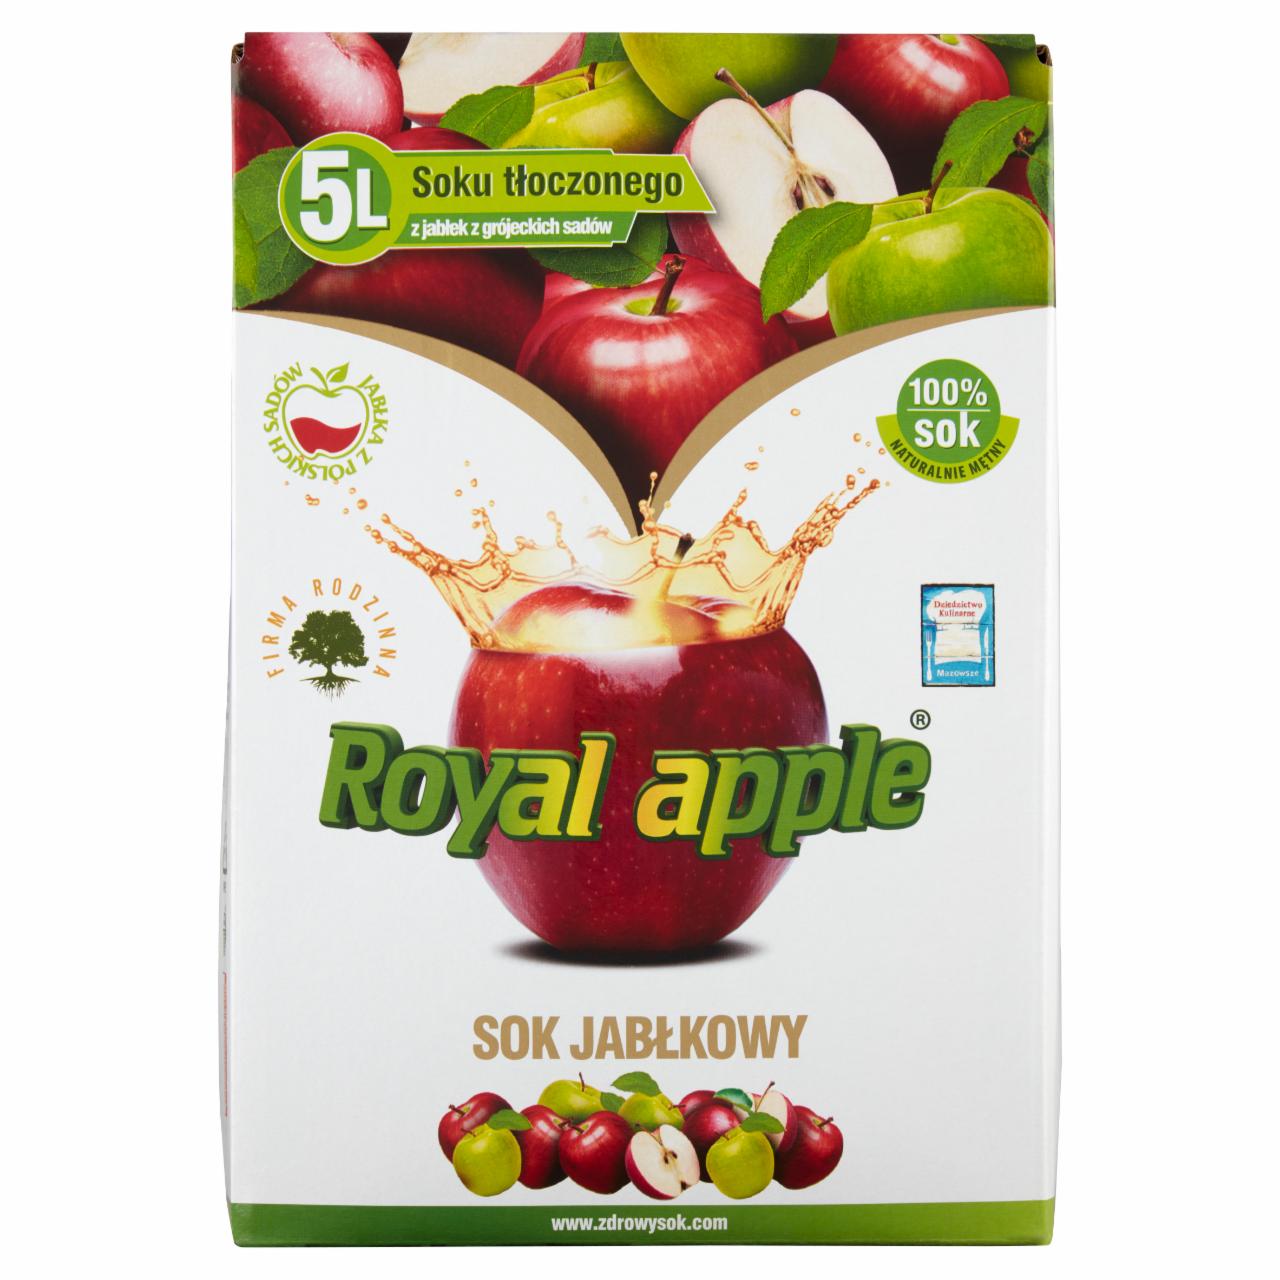 Zdjęcia - Royal apple Sok jabłkowy 5 l